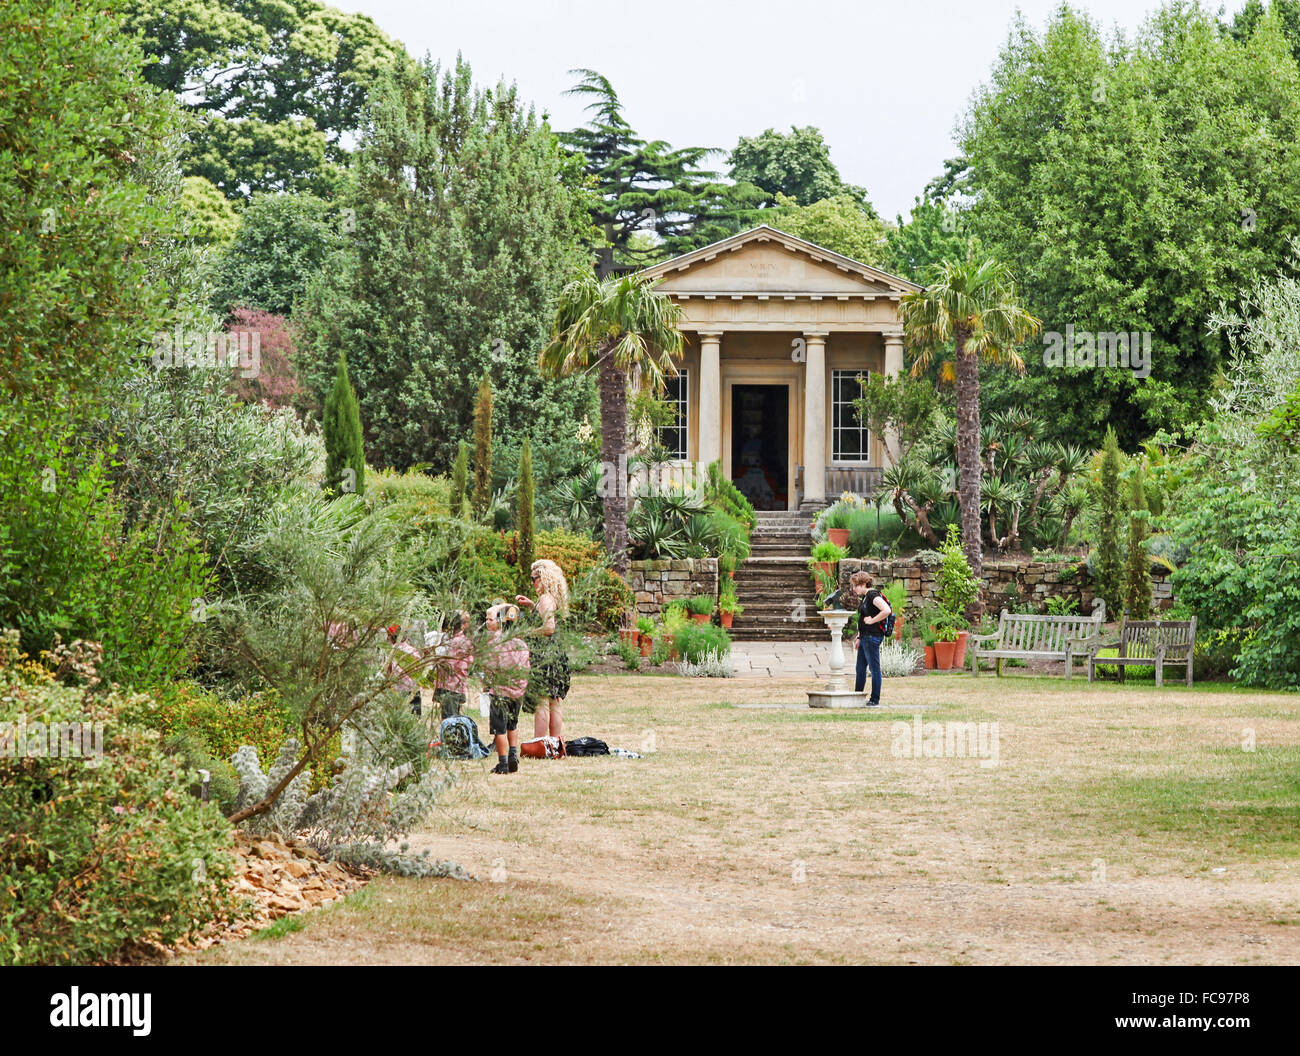 King William's Temple jardin méditerranéen Jardins botaniques royaux de Kew Gardens London England UK Banque D'Images